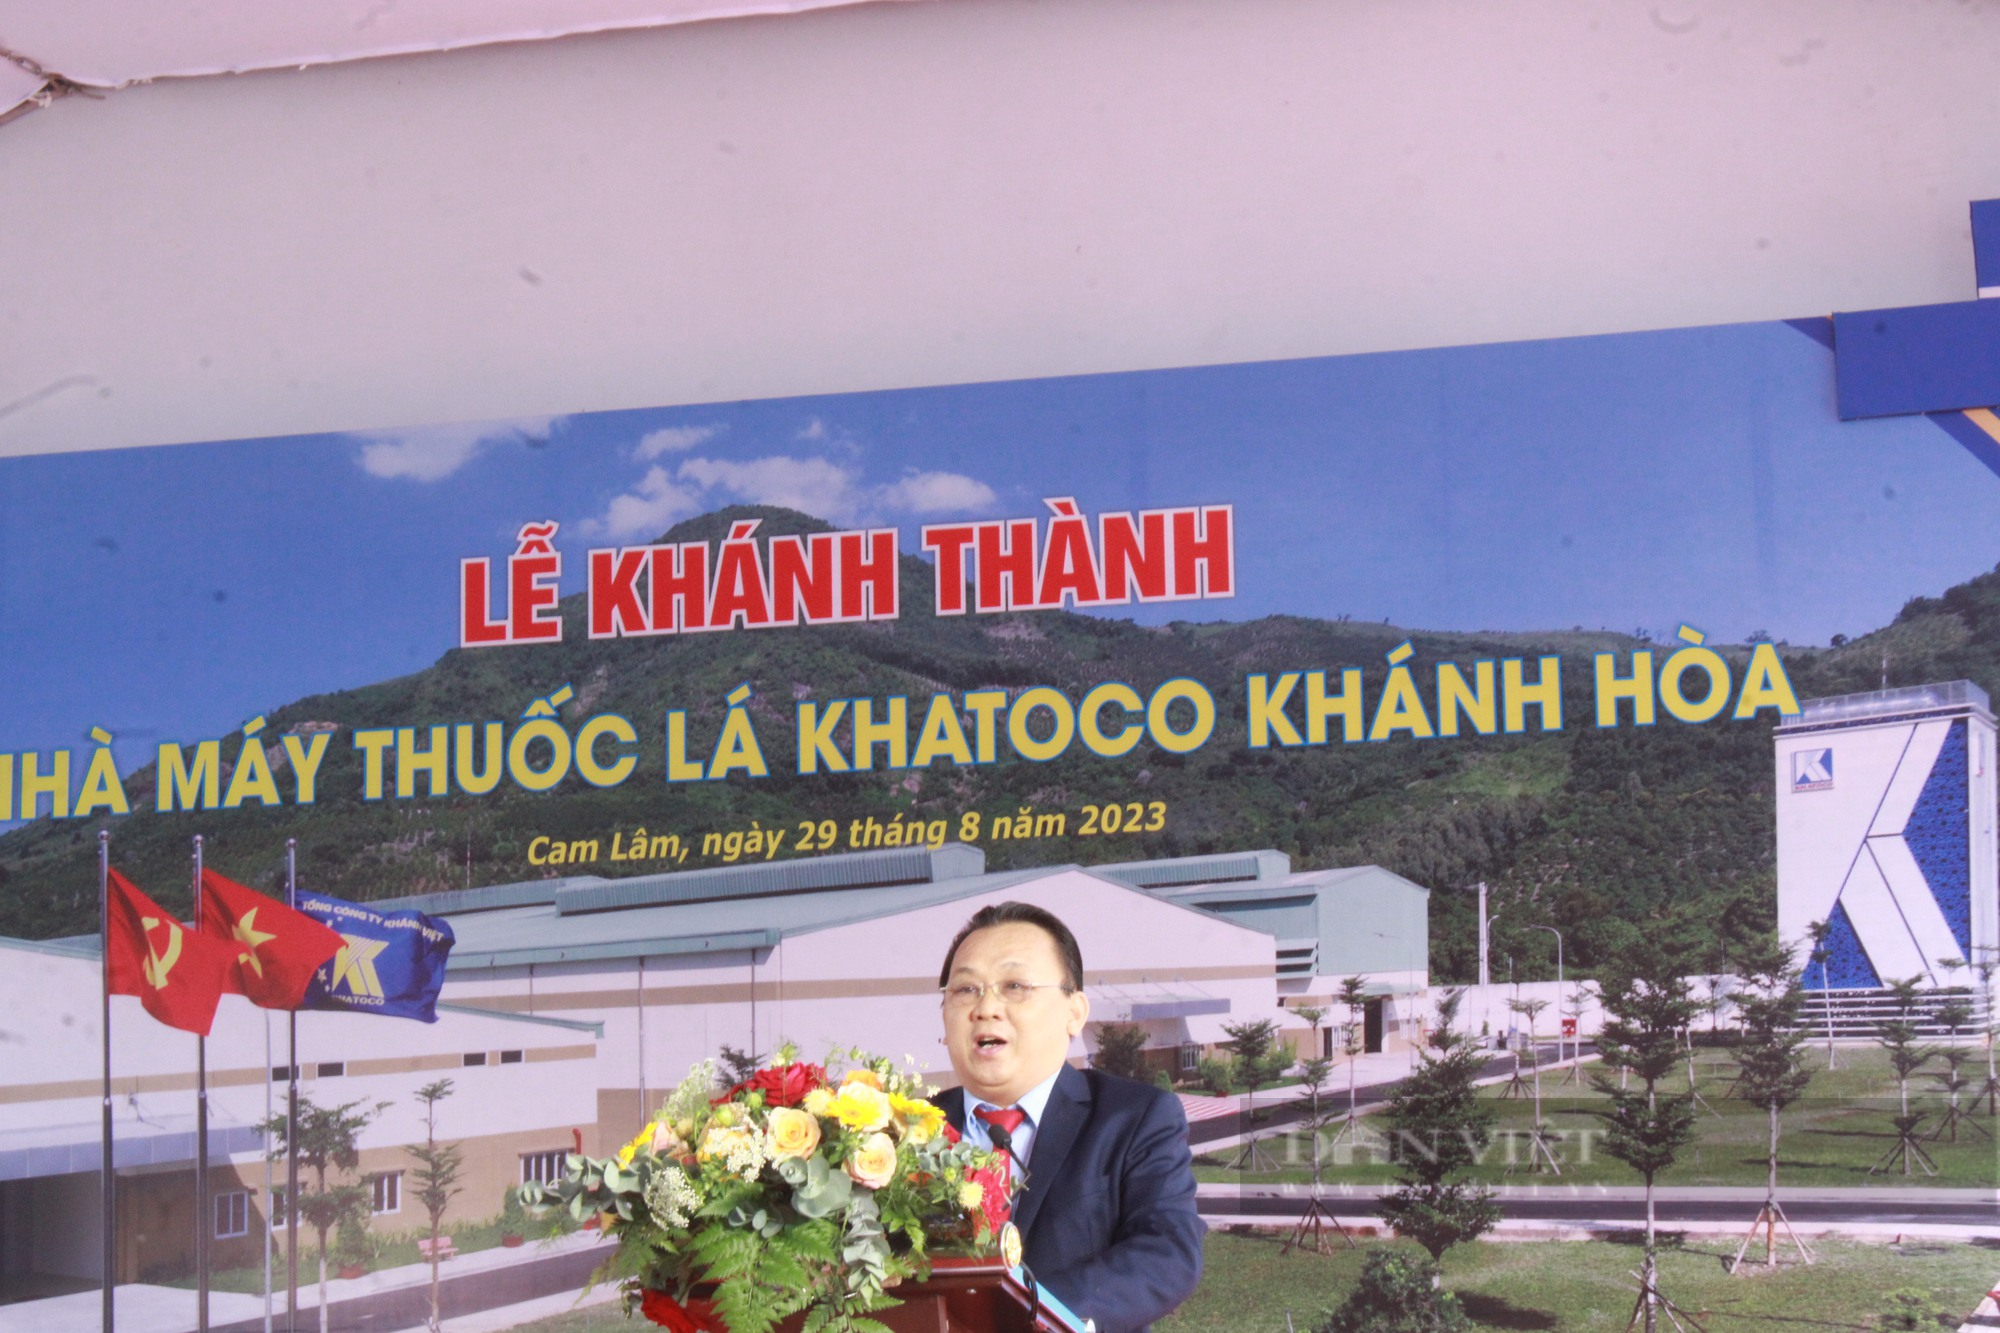 Khánh thành nhà máy thuốc lá Khatoco với tổng vốn 581 tỷ đồng - Ảnh 1.